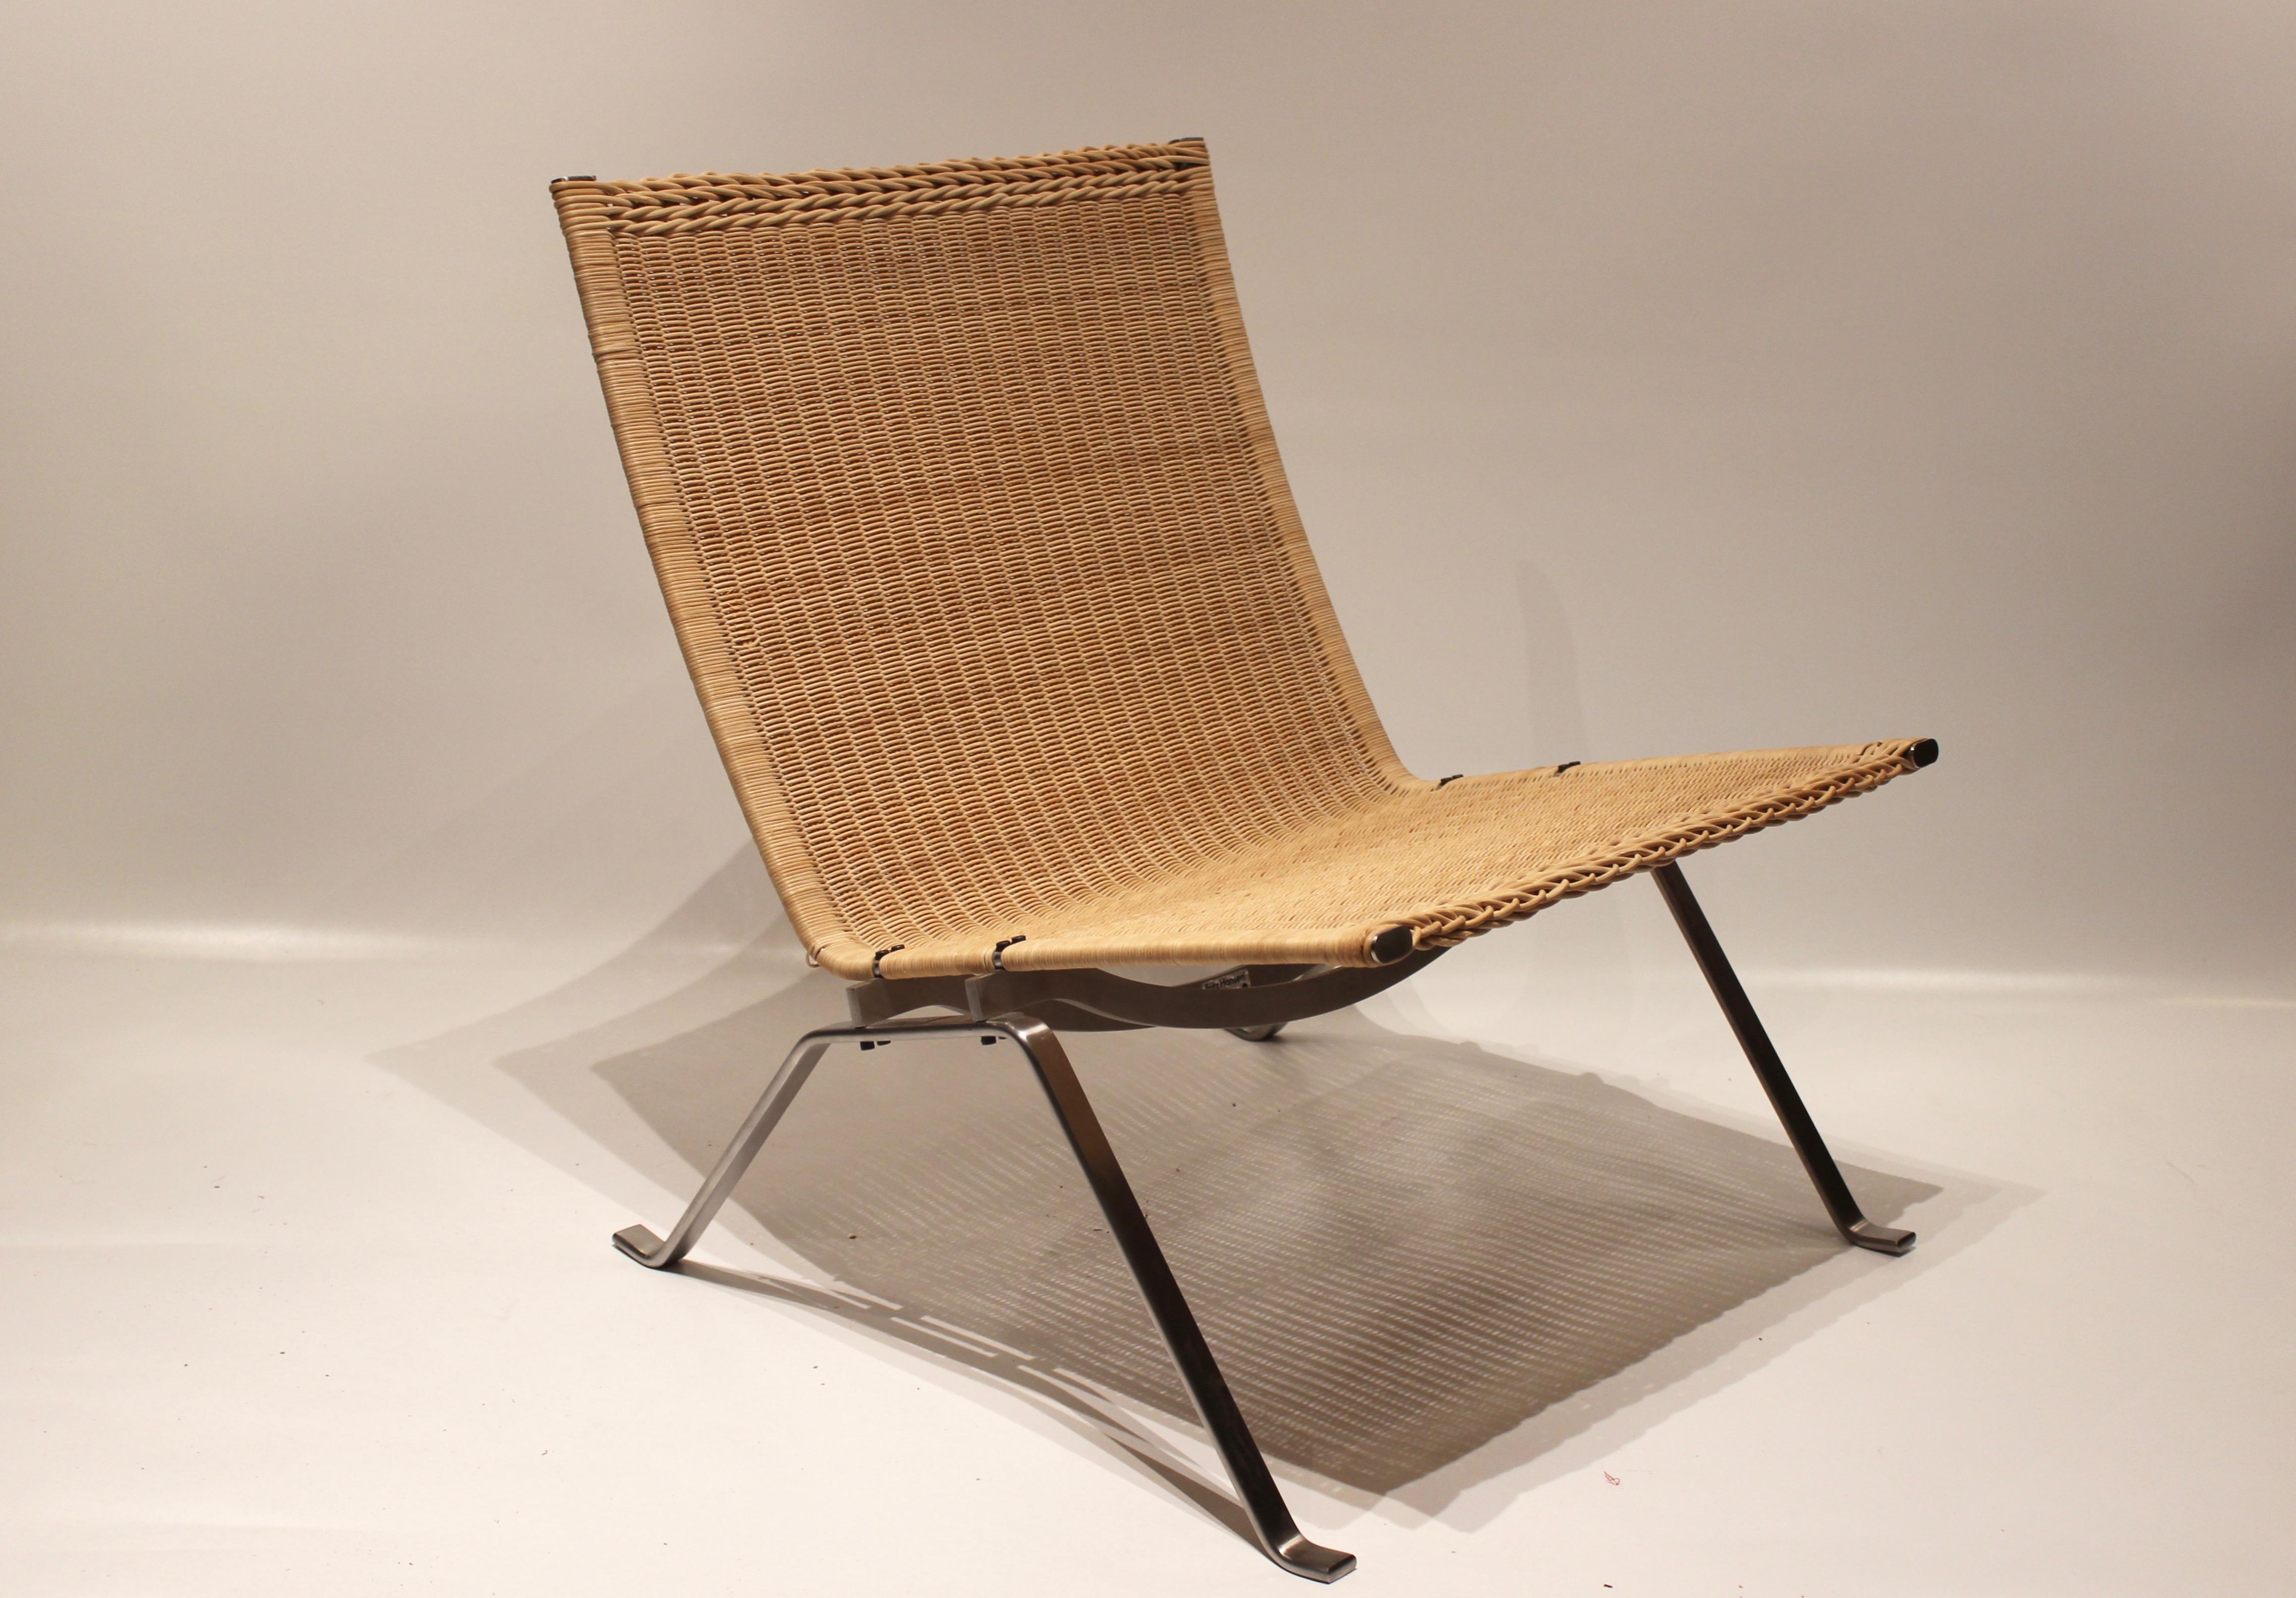 Sessel:: Modell PK22:: entworfen von Poul Kjærholm und hergestellt von Fritz Hansen im Jahr 2000. Der Stuhl ist mit originaler Papierkordel und Gestell aus Chrom. Wir haben drei auf Lager.